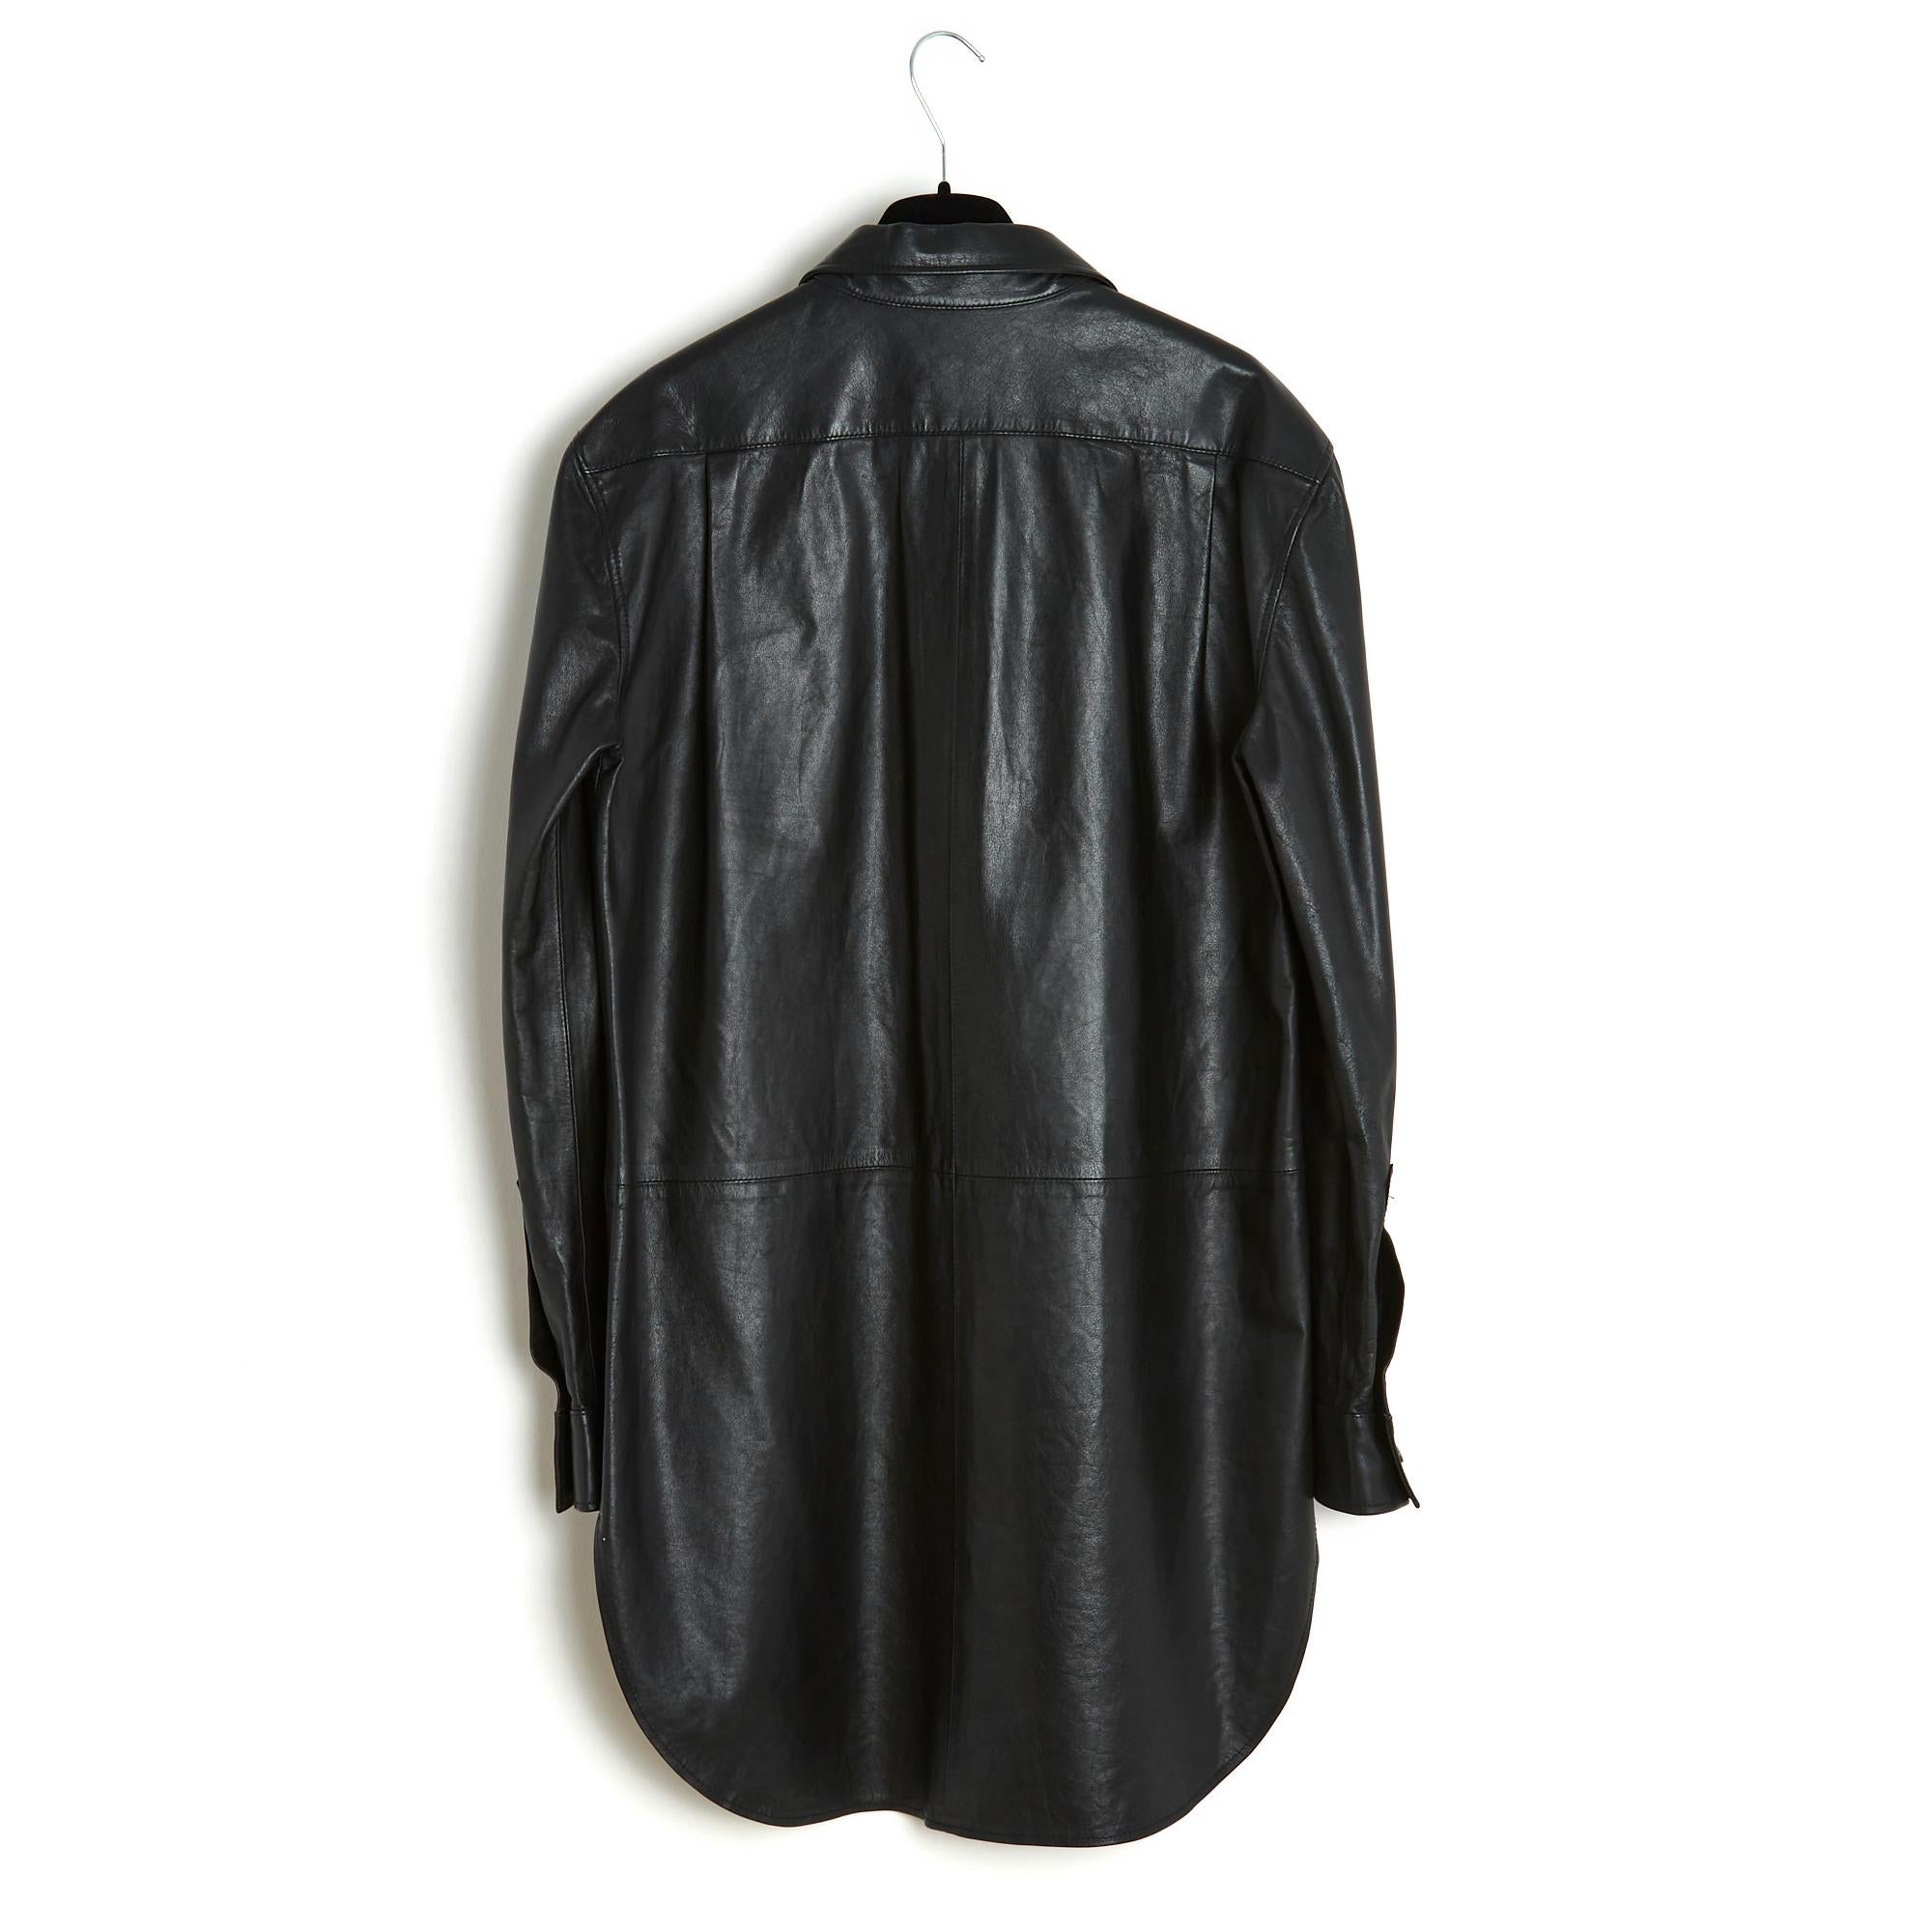 2008 Maison Martin Margiela 4 Black leather shirt dress tunique FR38 For Sale 1